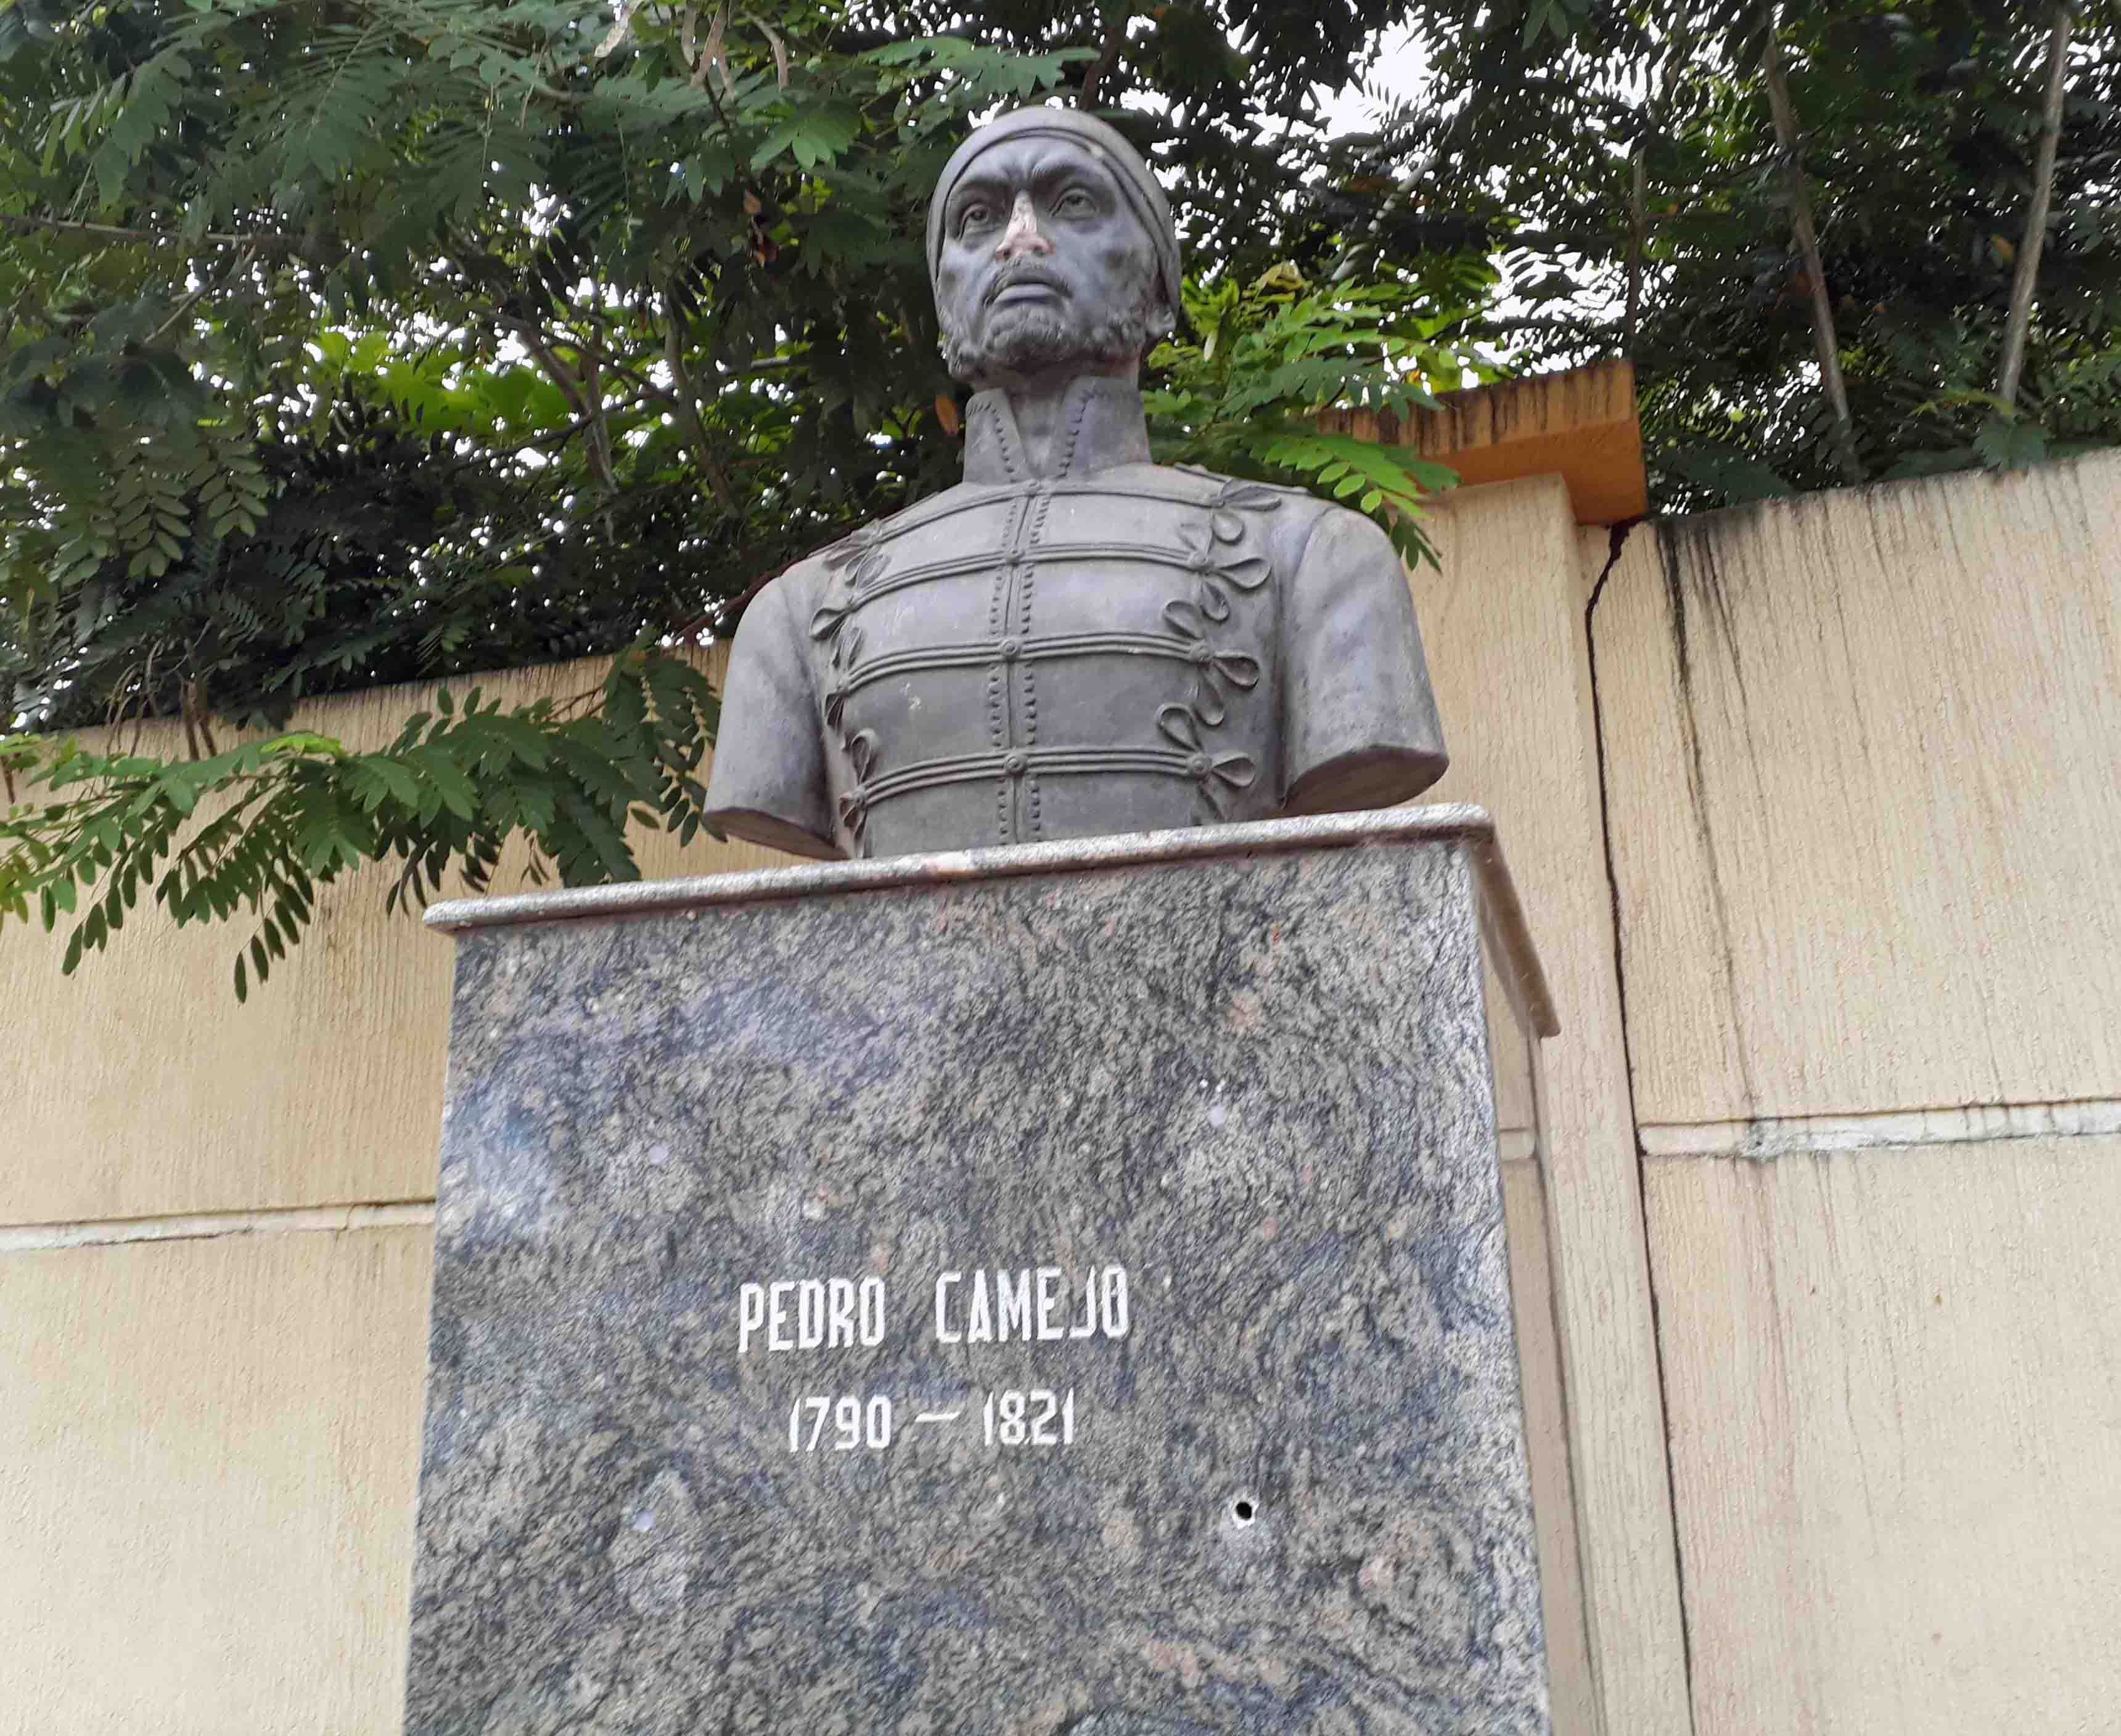 El busto de Pedro Camejo también queda en el Paseo Los Próceres de Maturín, aunque con algunos daños. Foto Jesymar Añez, noviembre 2018.